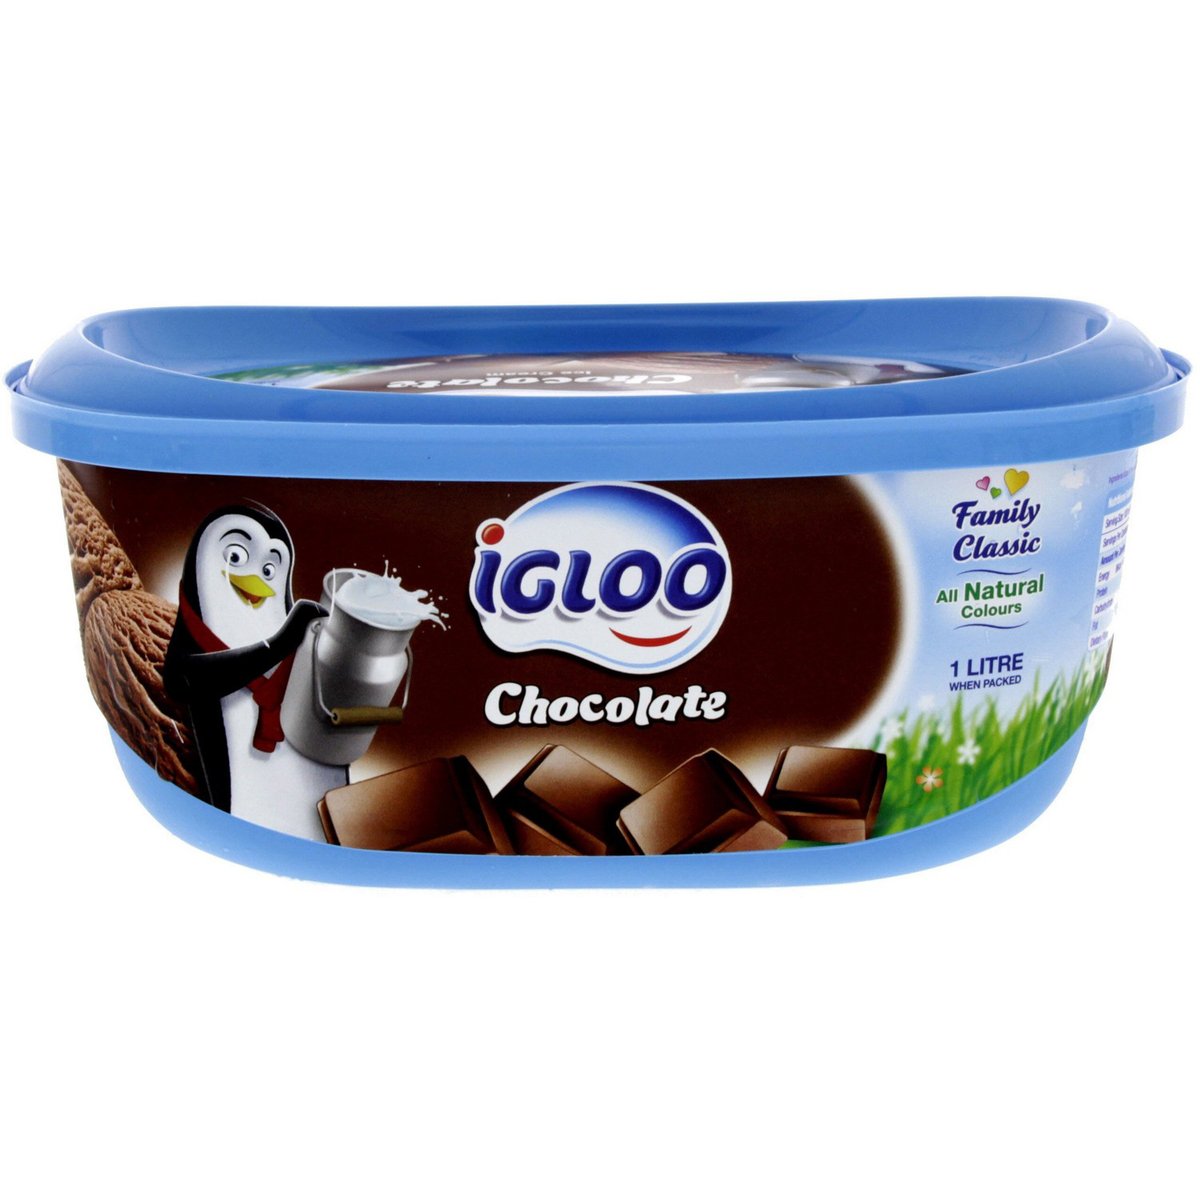 اشتري قم بشراء آيس كريم شوكولاتة إيجلو 1 لتر Online at Best Price من الموقع - من لولو هايبر ماركت Ice Cream Take Home في السعودية